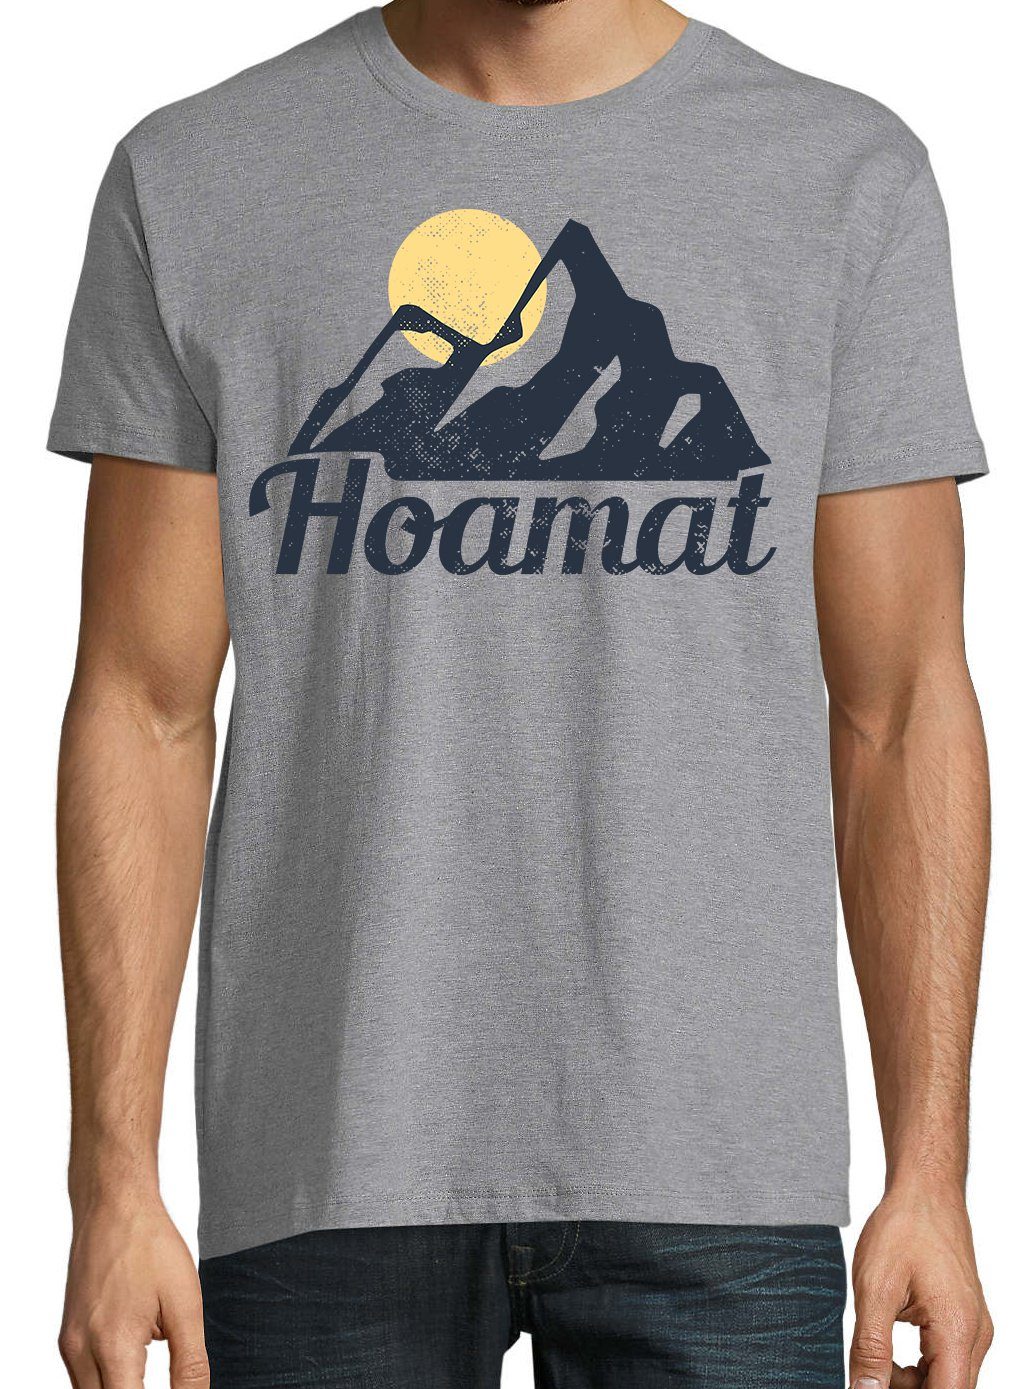 Youth Designz T-Shirt lustigem Spruch mit T-Shirt Herren Hoamat Grau